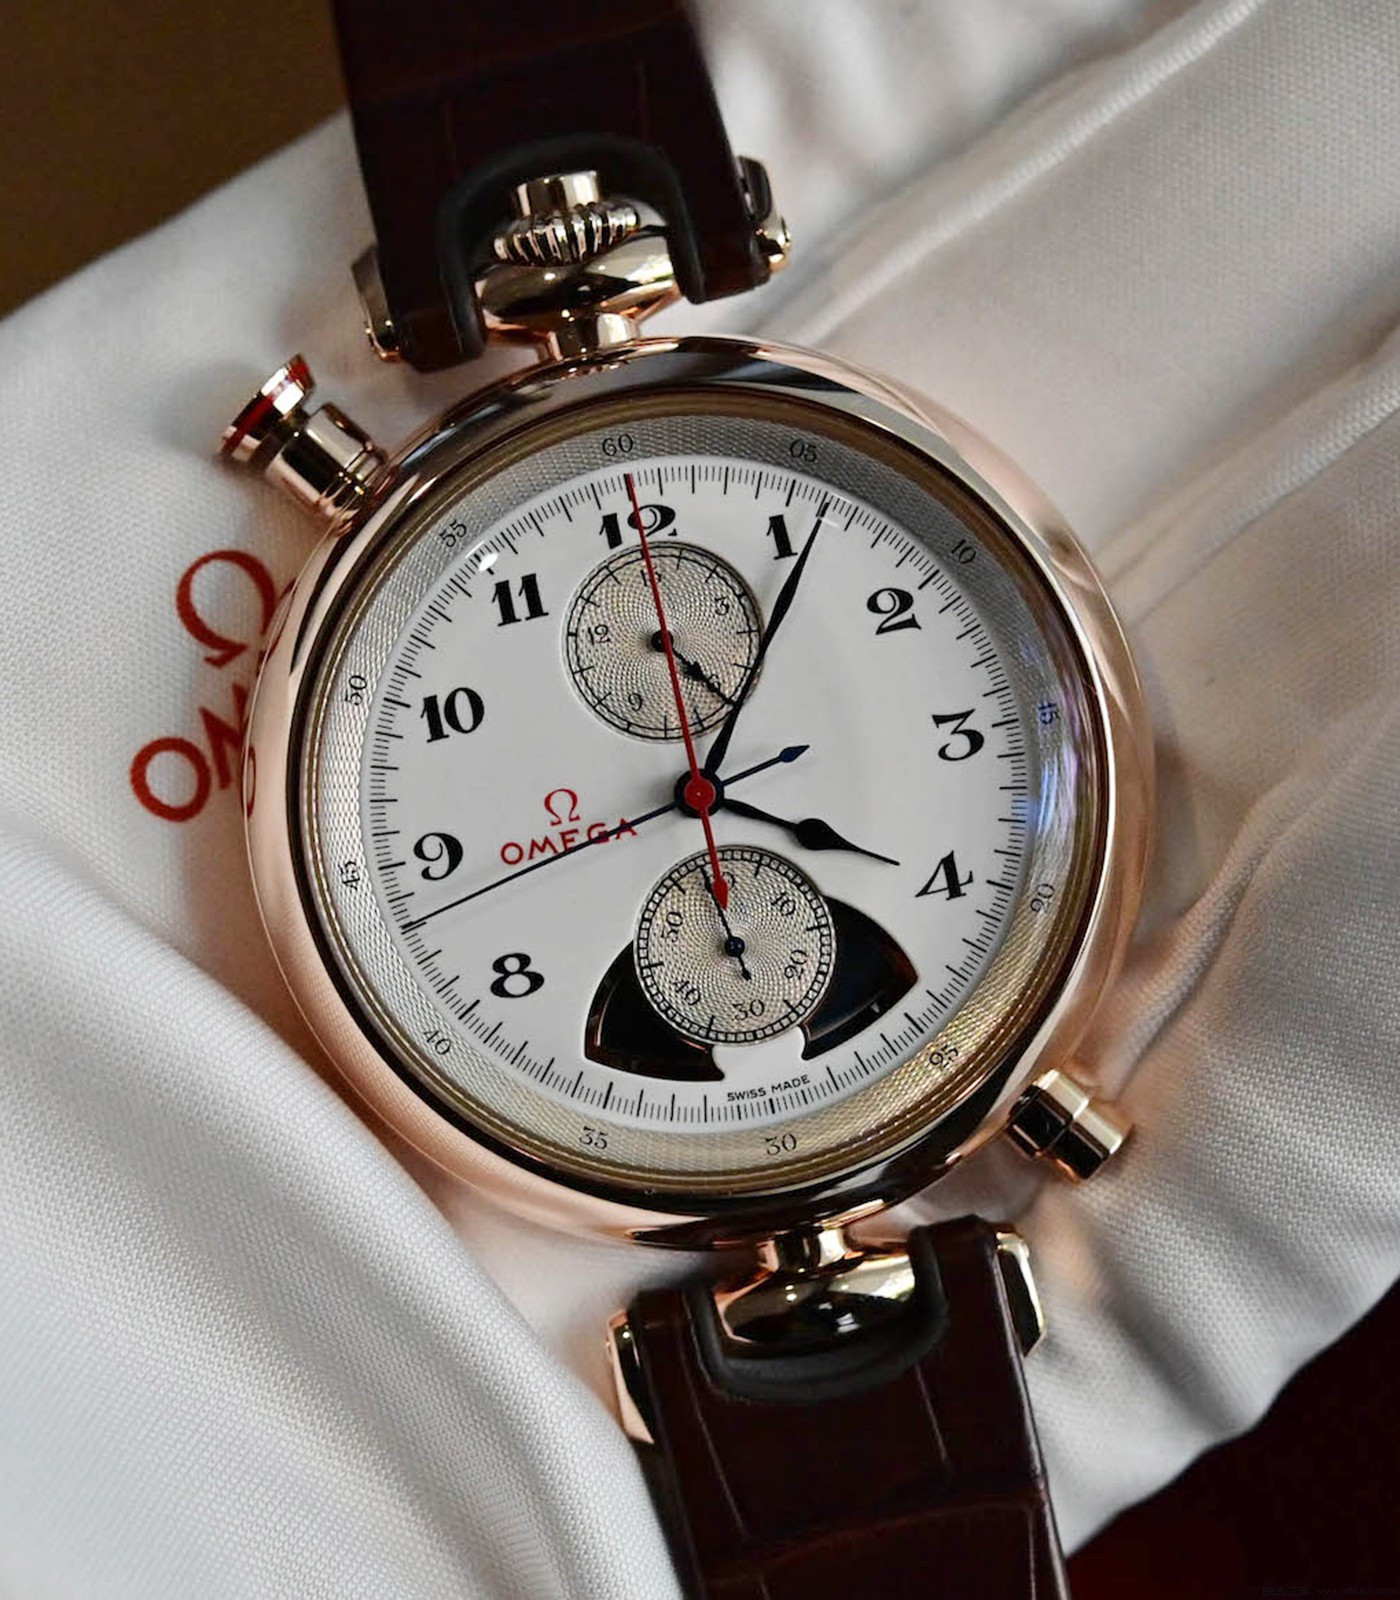 UK Omega Replica Watch